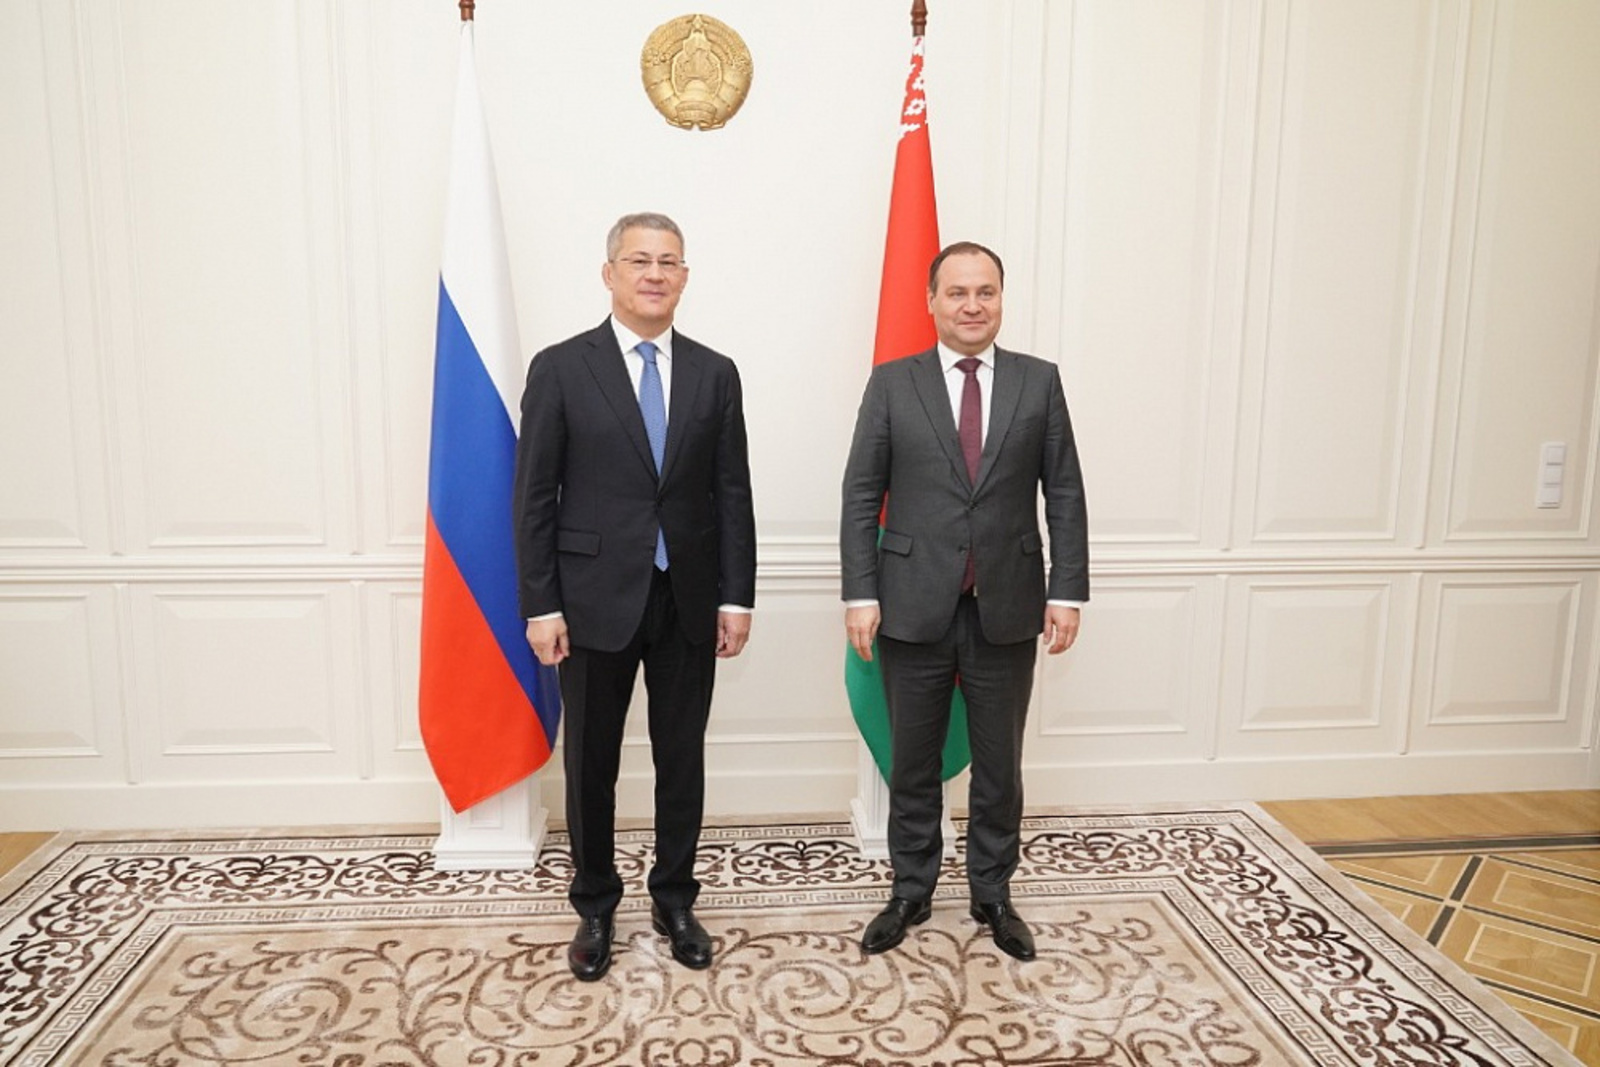 Рабочая встреча с Премьер-министром Беларуси Романом Головченко